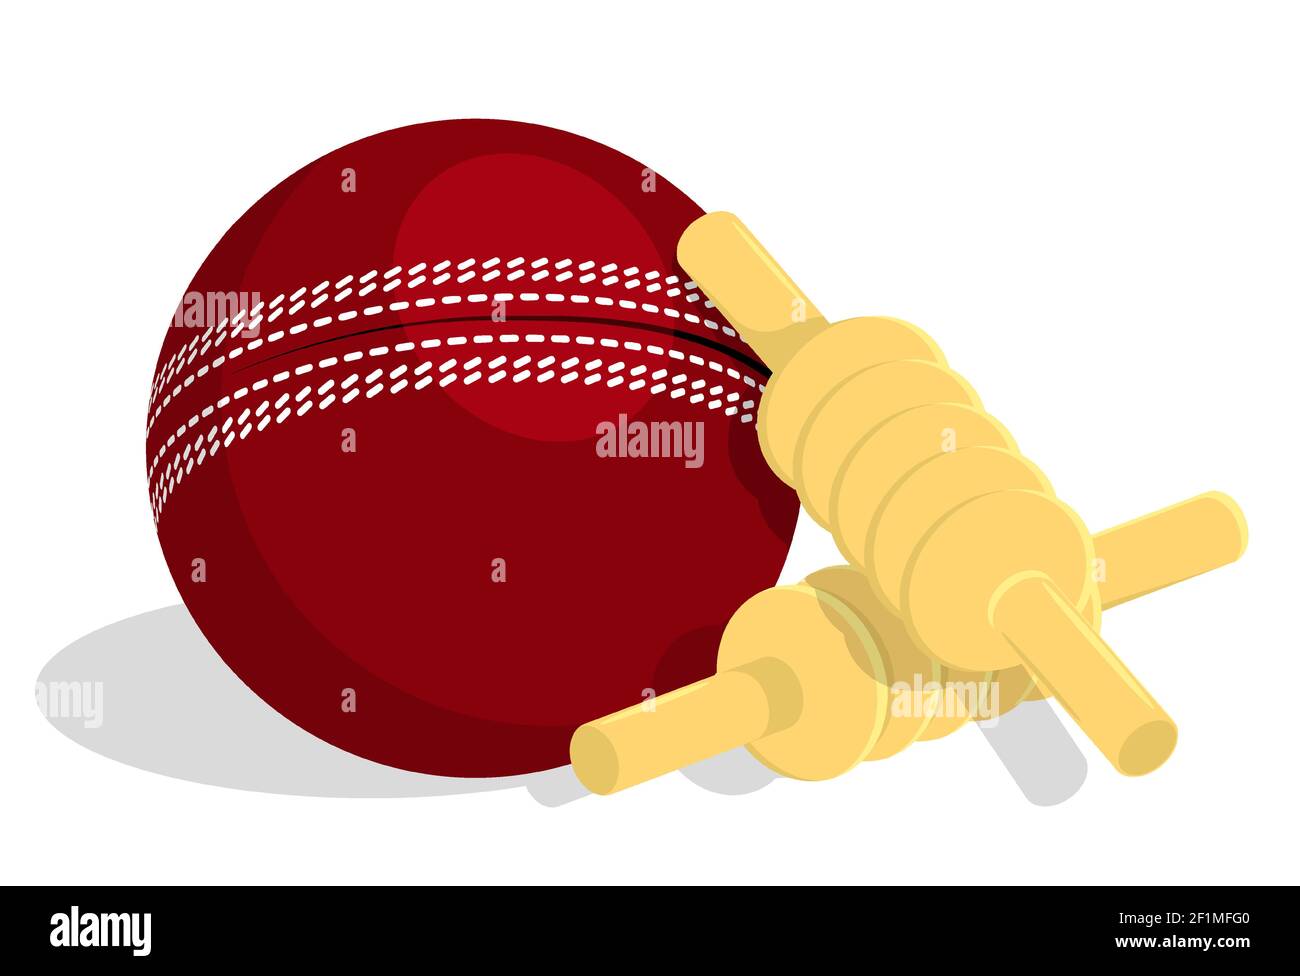 les meilleurs bars de cricket en bois se trouvent sur le ballon de sport rouge. Vecteur isolé dans le style de dessin animé Illustration de Vecteur